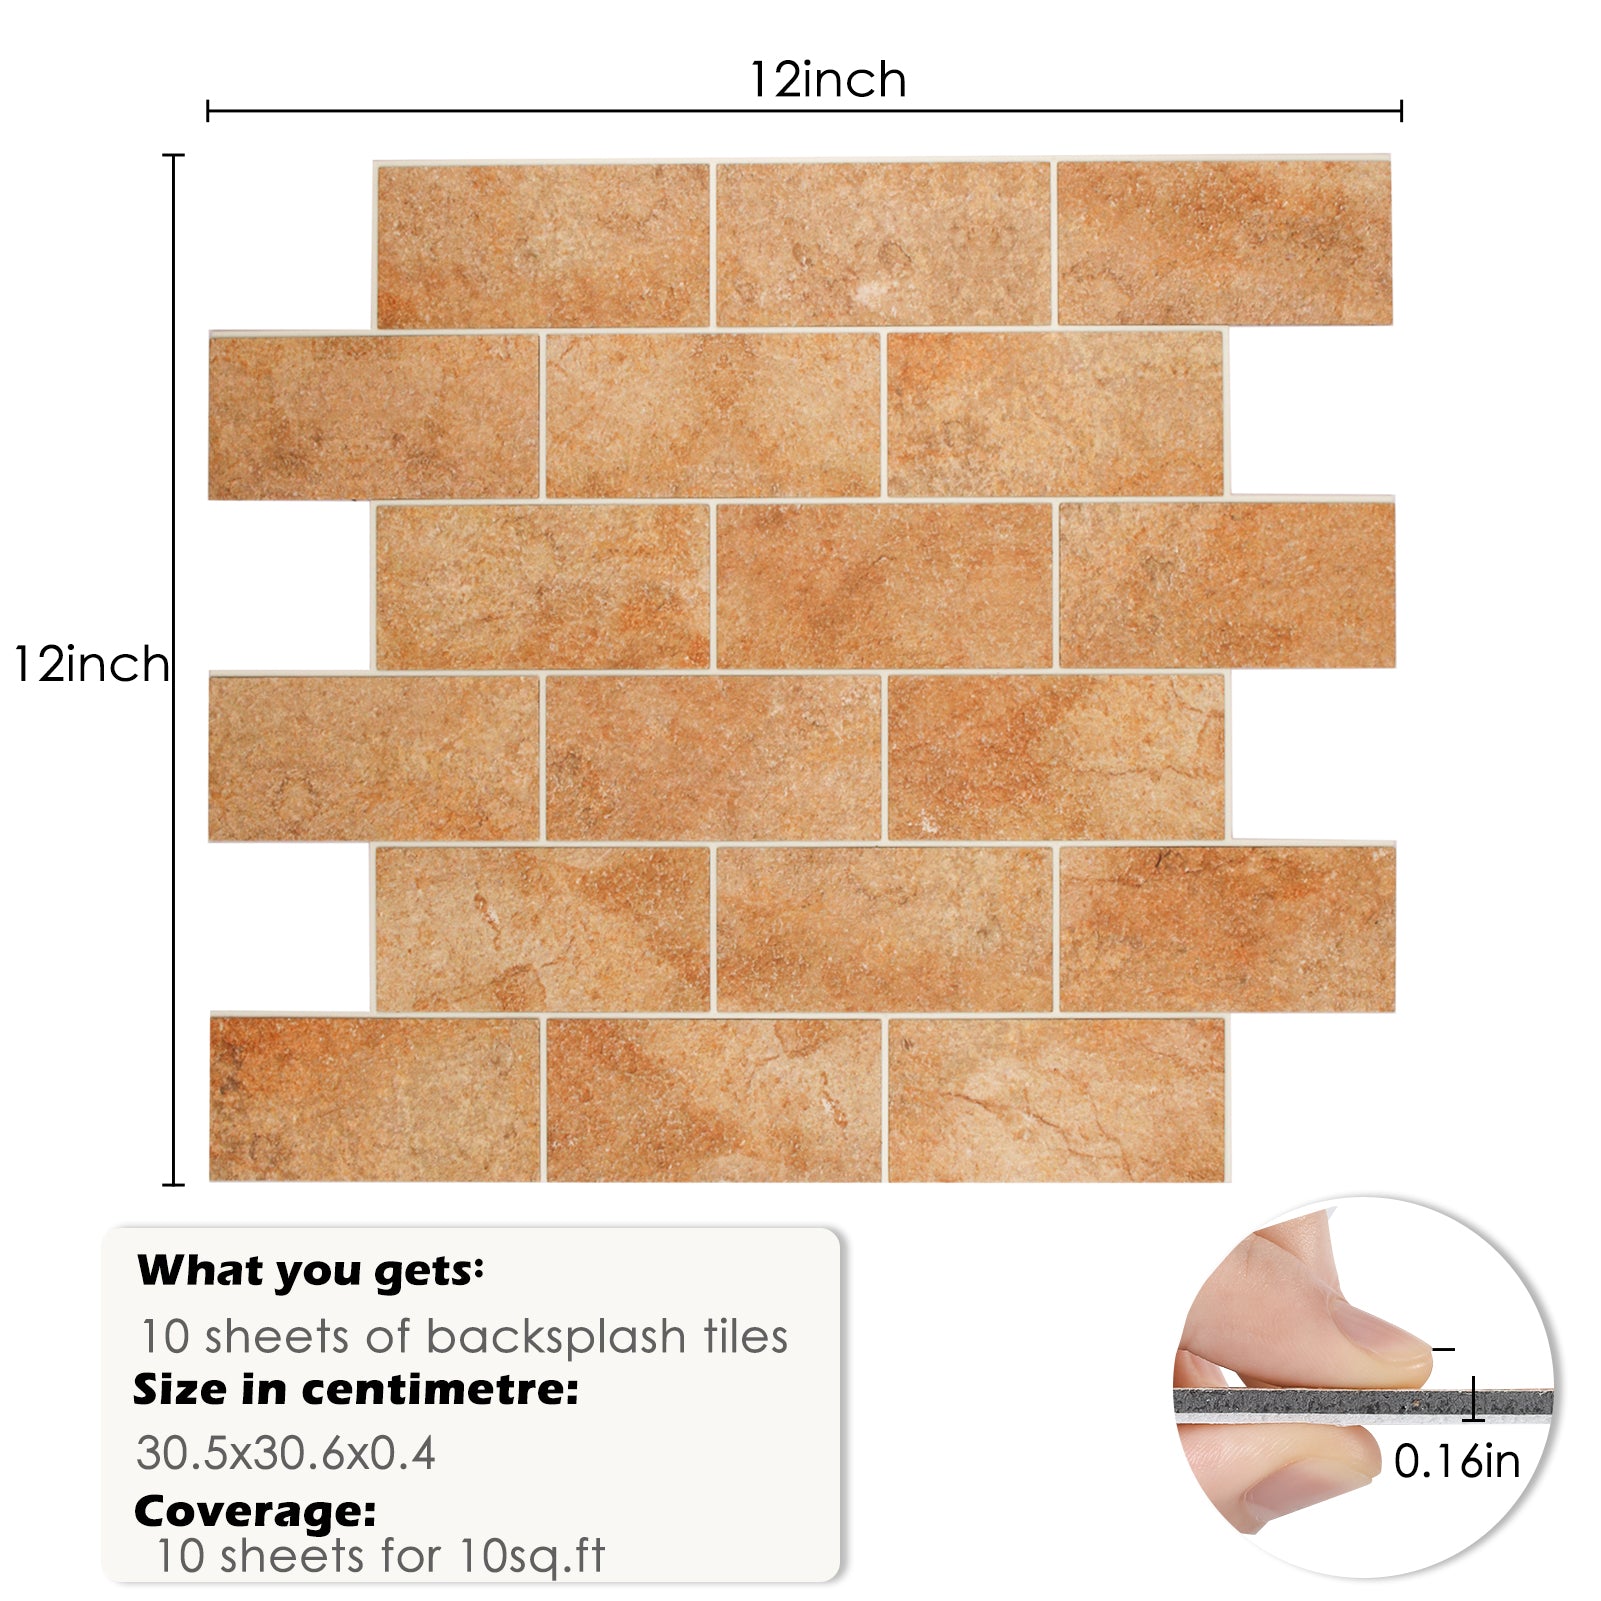 size of backsplash tile